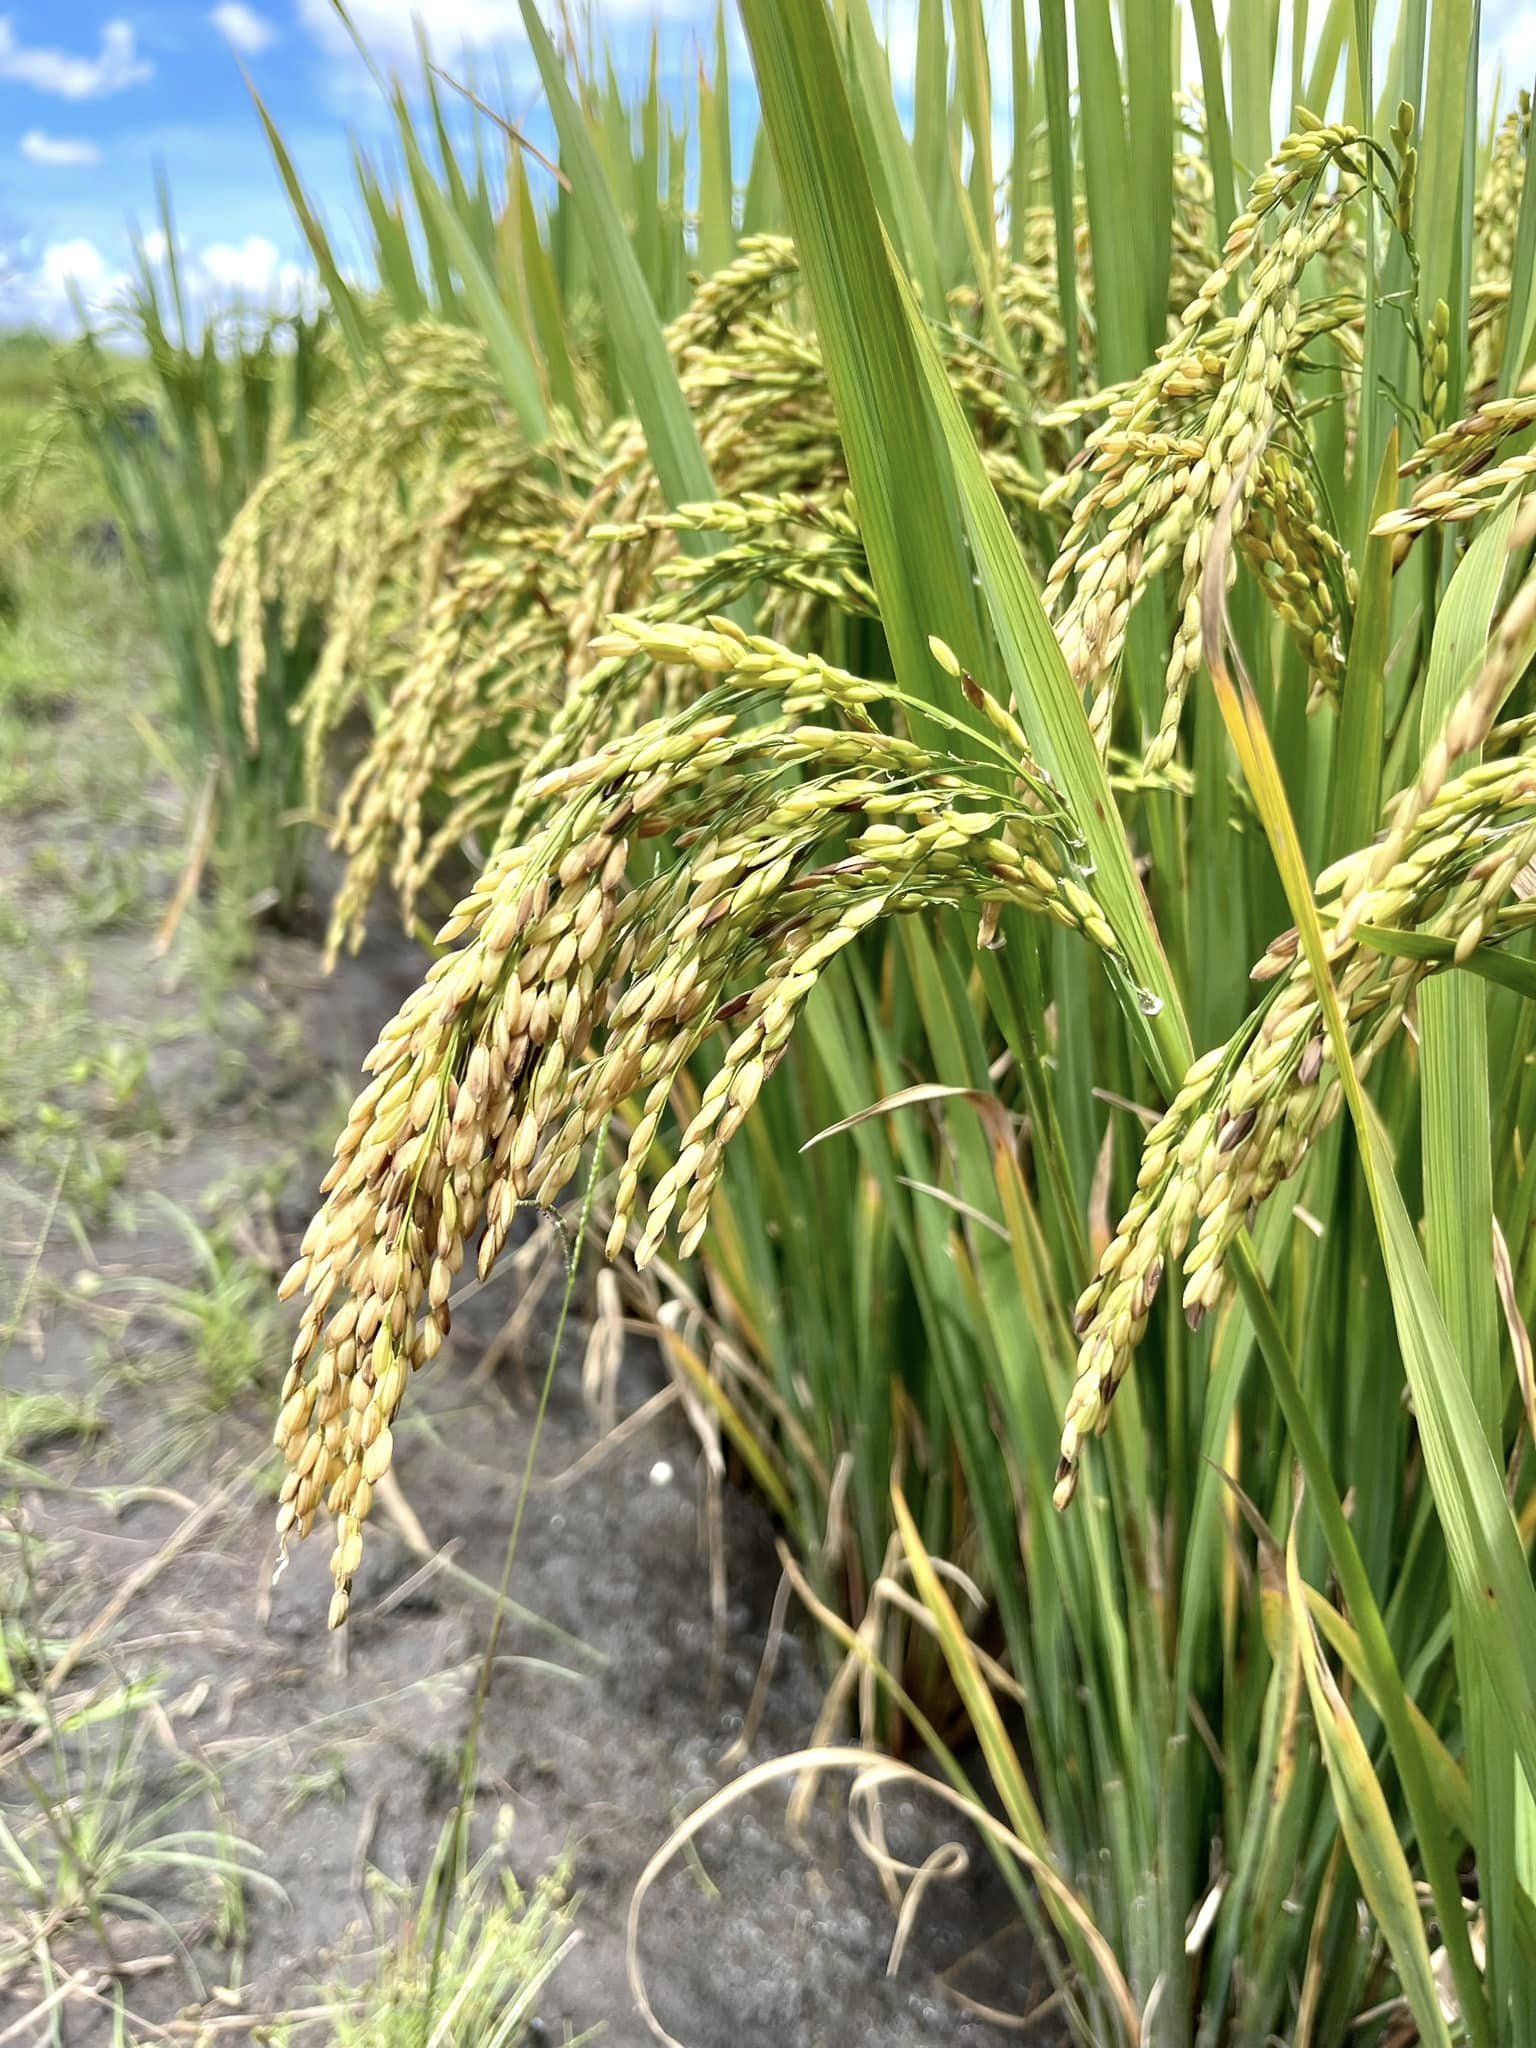 Ruộng lúa nước tại Angola sắp thu cả tấn thóc, bõ công chủ trang trại Việt khóc mếu nhờ hiến kế cứu cây- Ảnh 3.